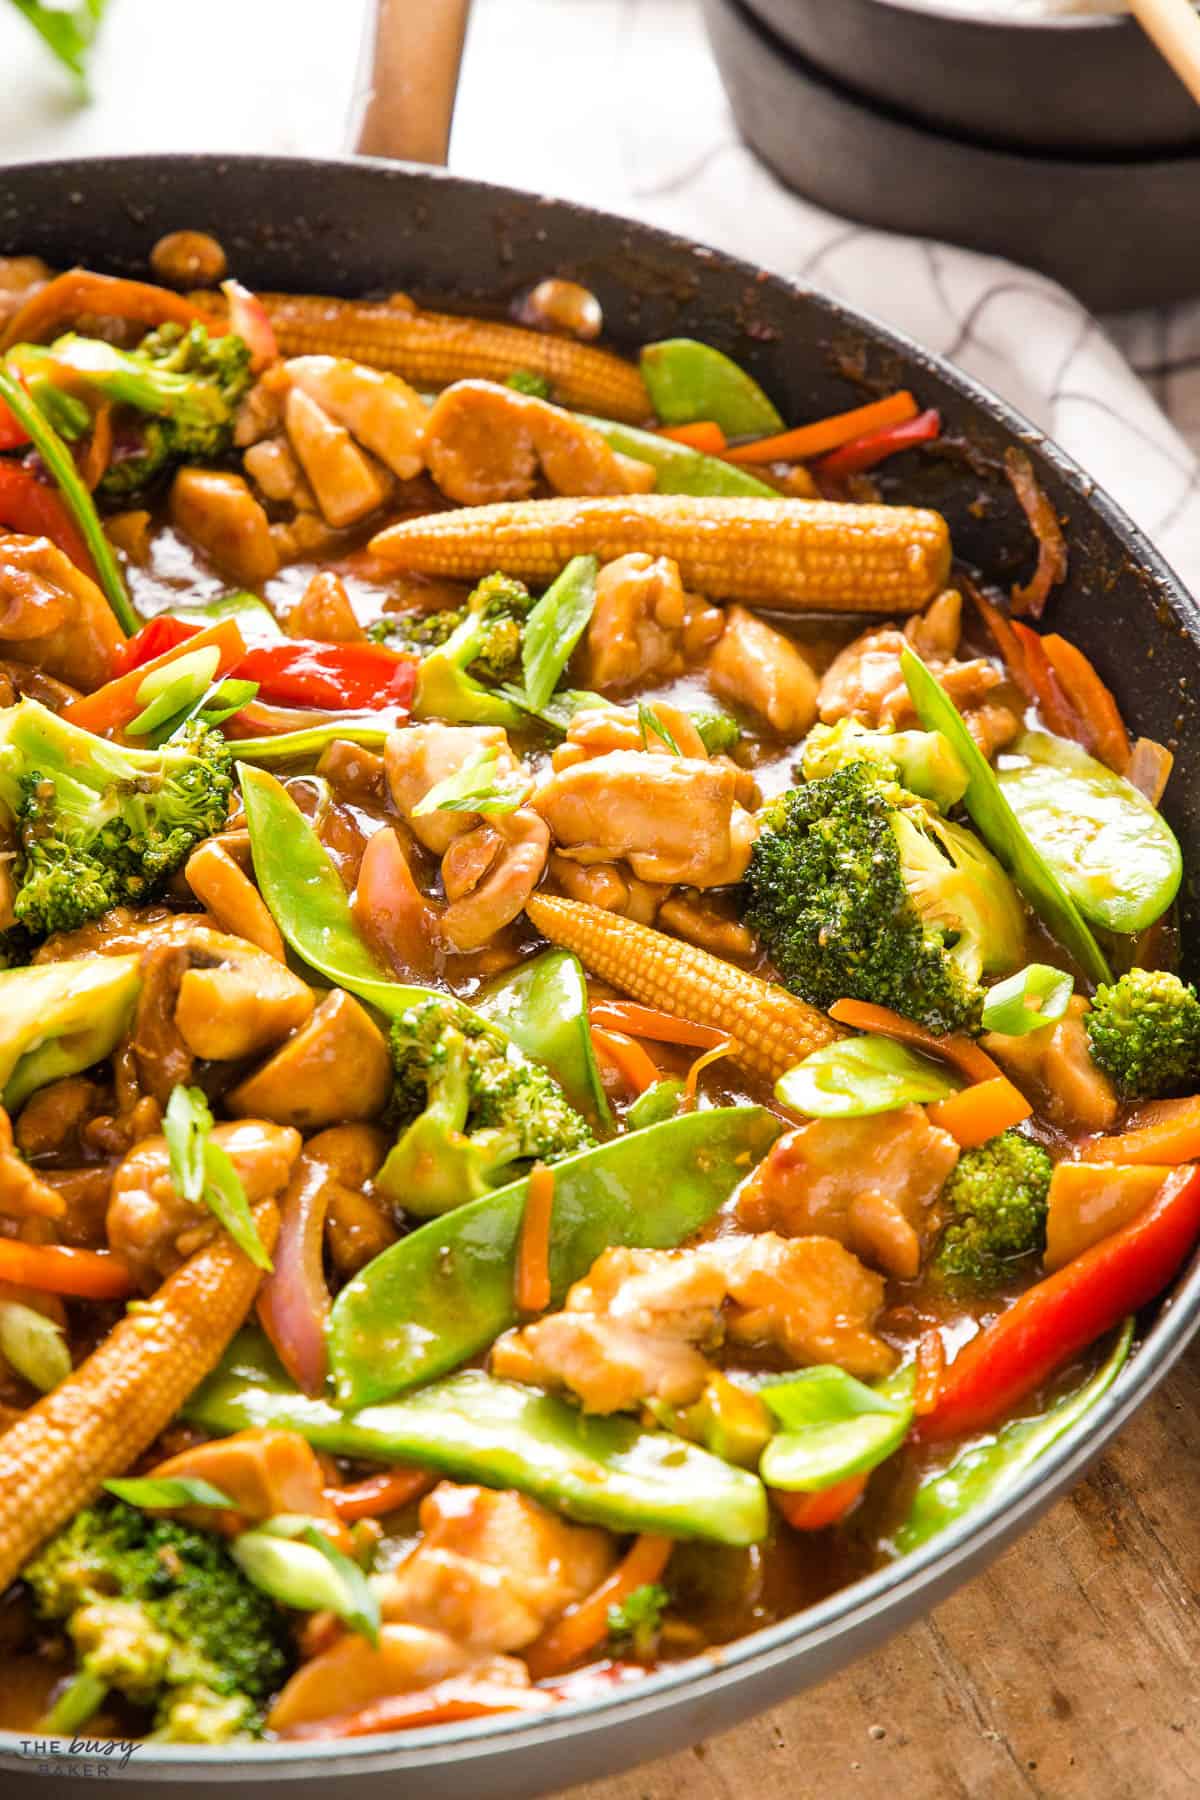 chicken stir fry recipe in skillet with veggies